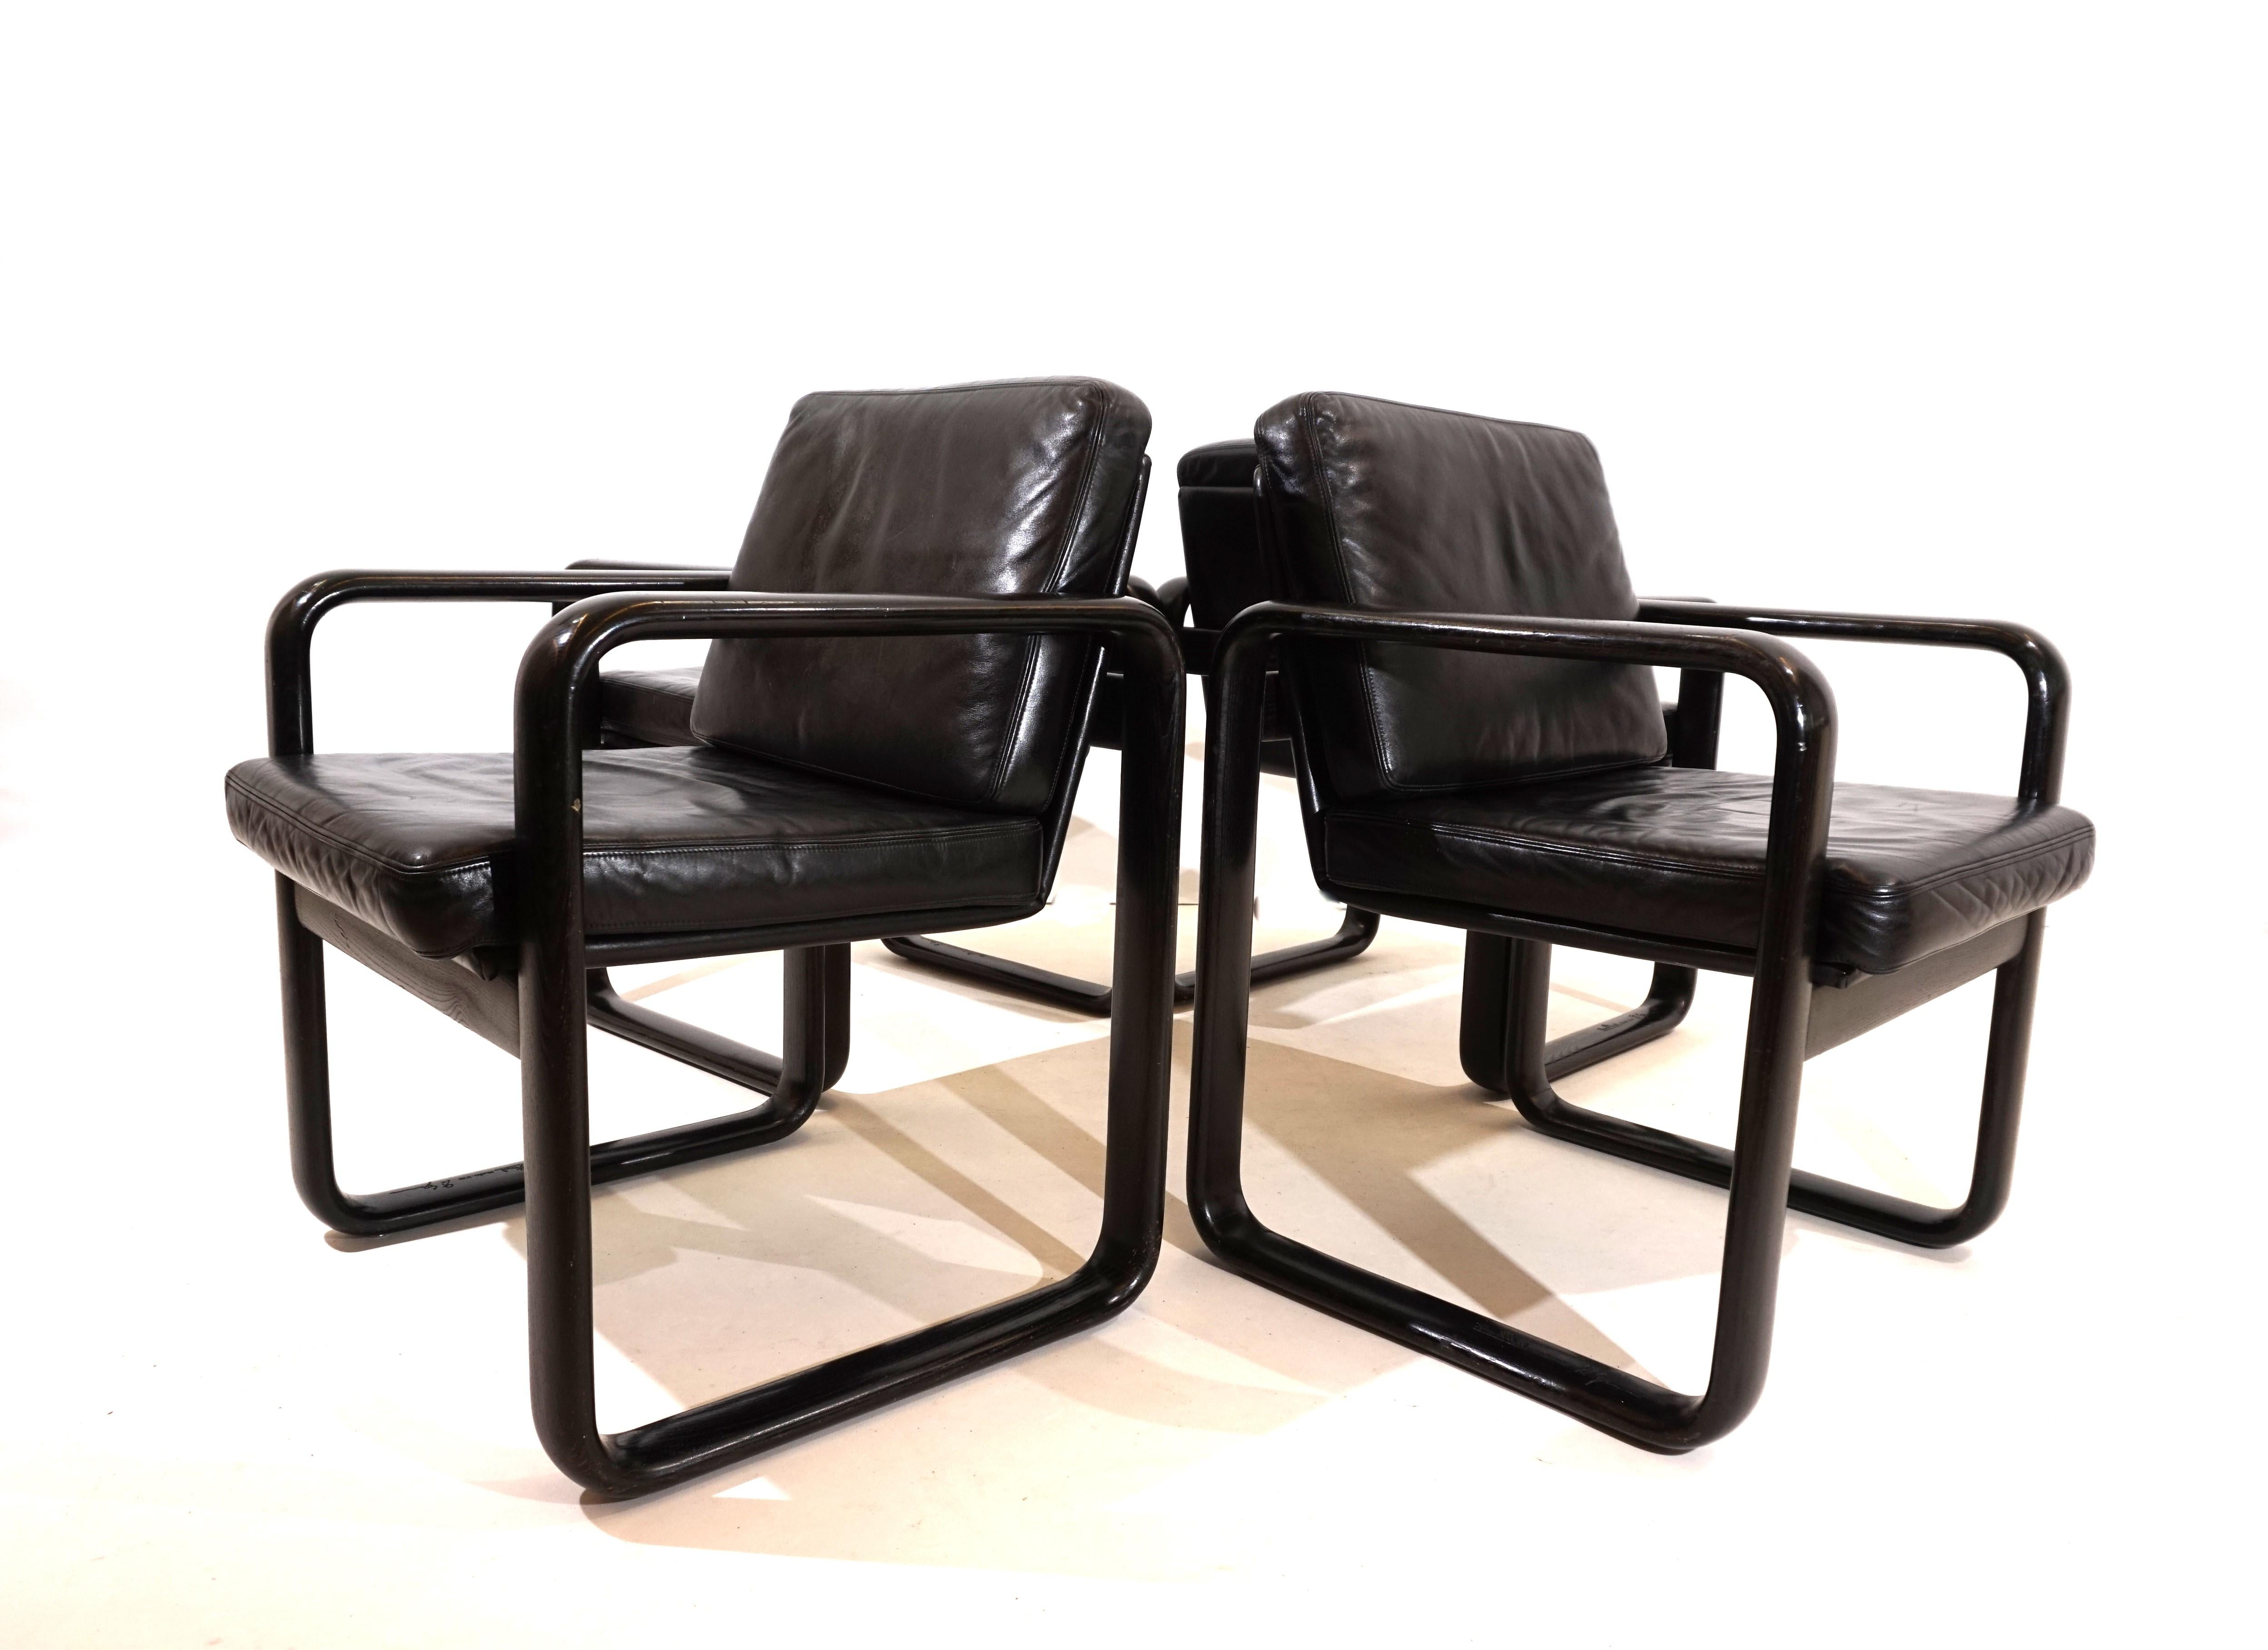 Das 4er-Set dieser auffälligen Hombre-Stühle kommt in der beliebtesten Farbkombination aus schwarzem Leder und schwarzem Holzrahmen. Das Leder der Stühle ist in sehr gutem Zustand und der Sitzkomfort ist tadellos. Die kubistischen Holzrahmen der